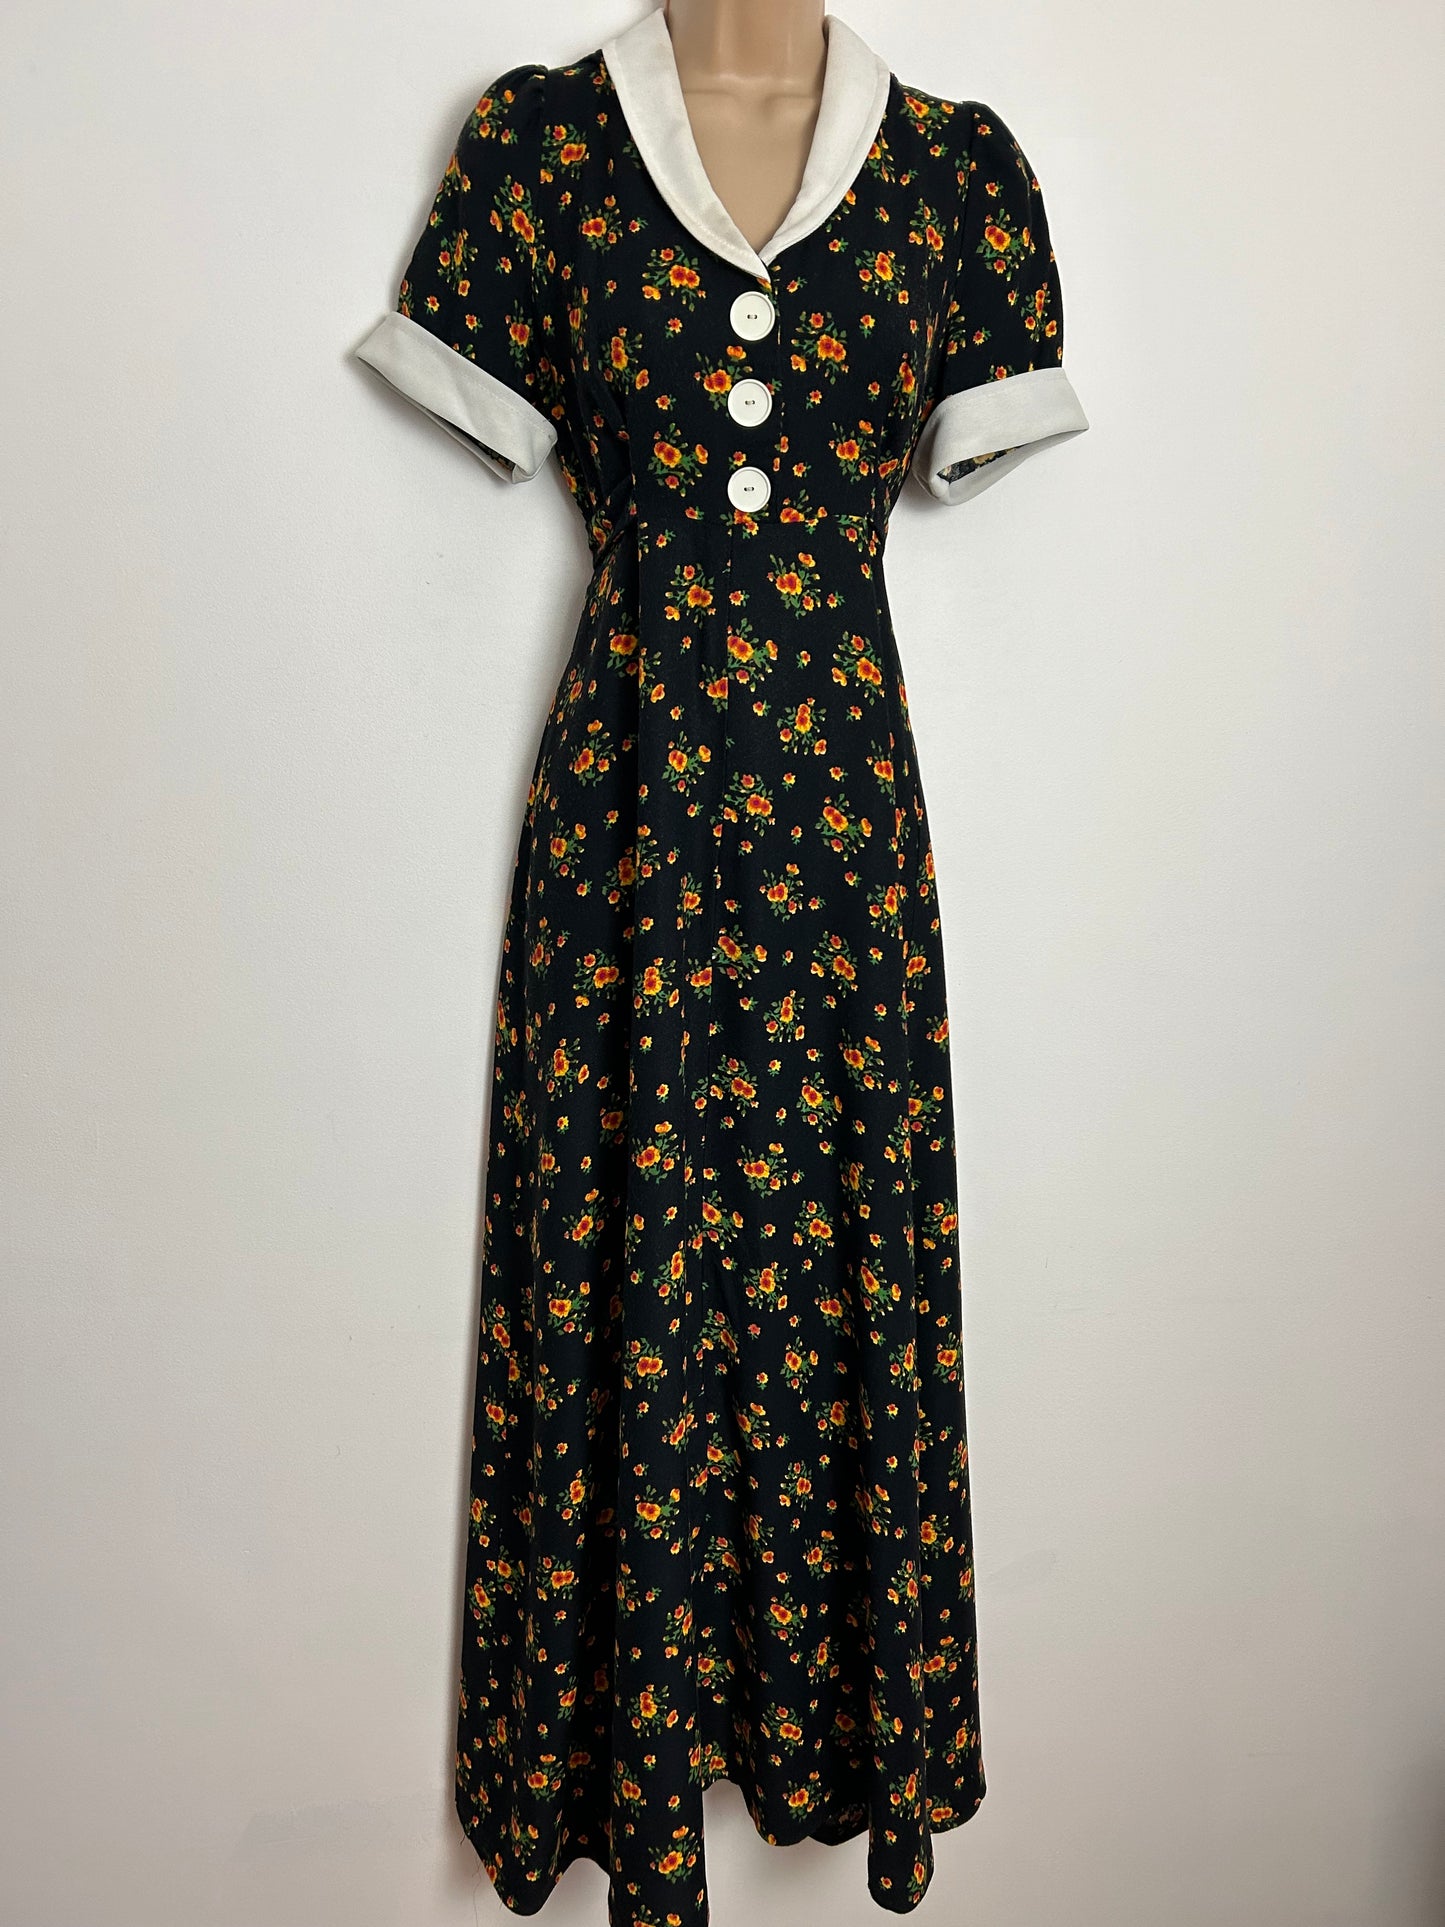 Vintage 1970s UK Size 6-8 Black & Orange Floral Print Short Sleeve Collared Tie Back Boho Maxi Dress